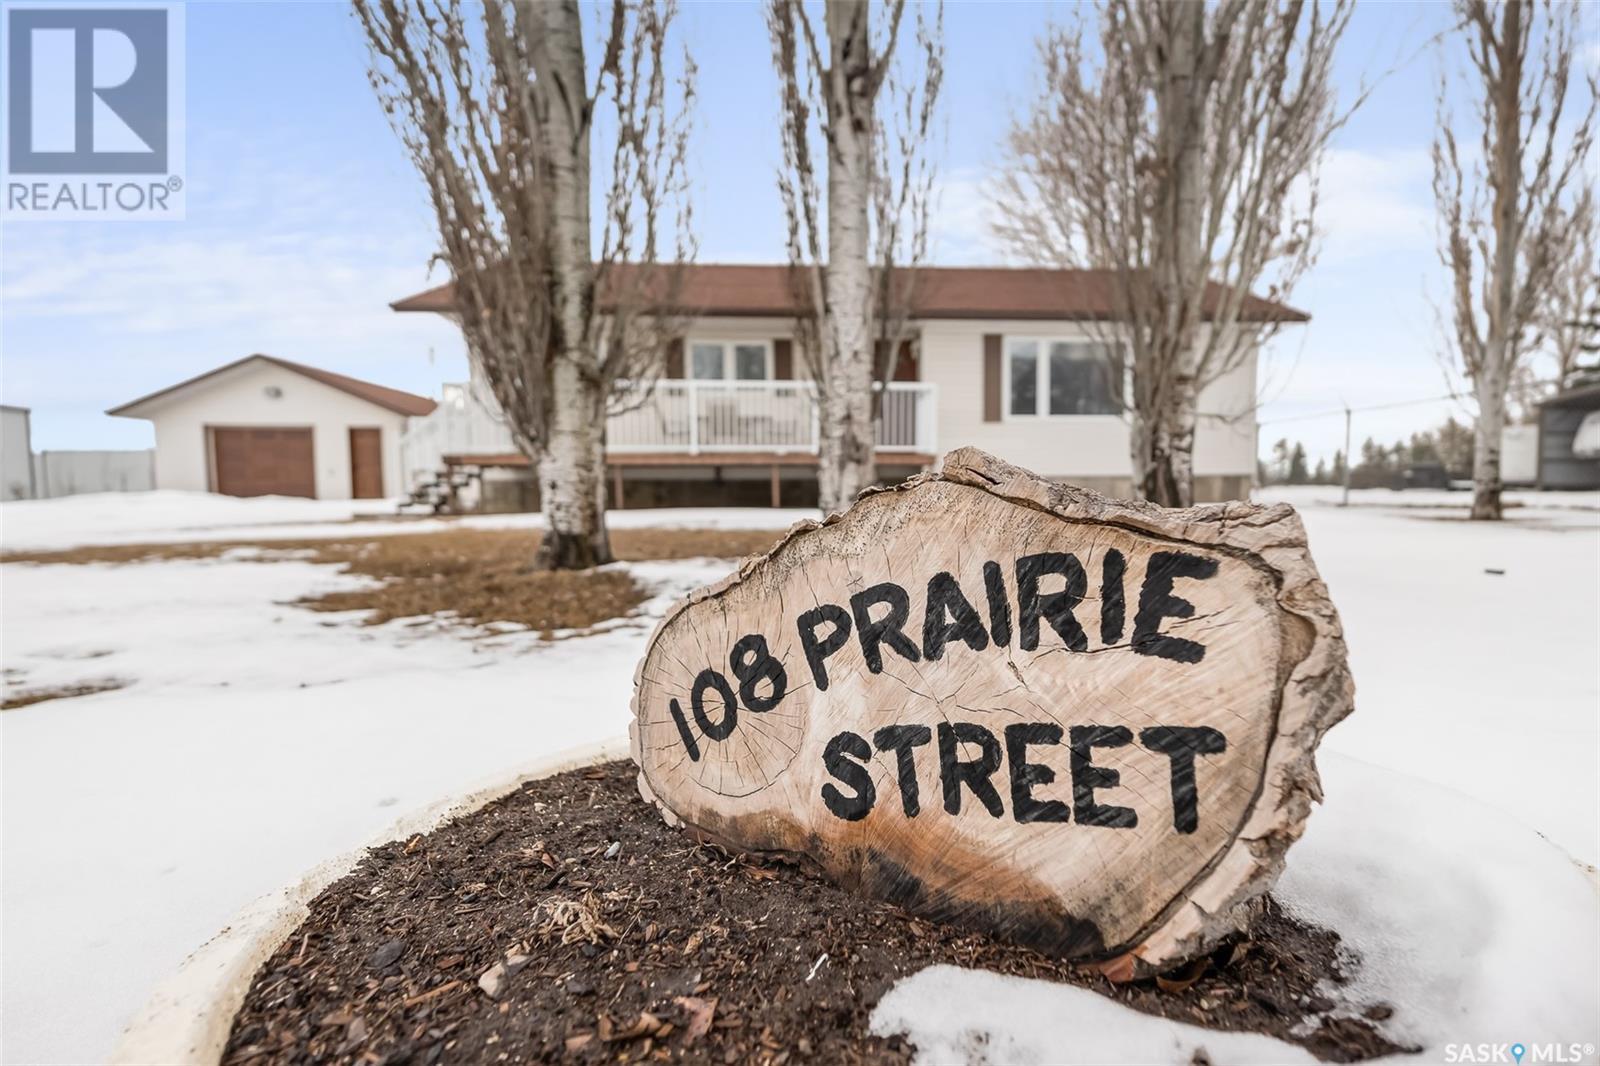 












108 Prairie STREET

,
Belle Plaine,




Saskatchewan
S0G0G0

